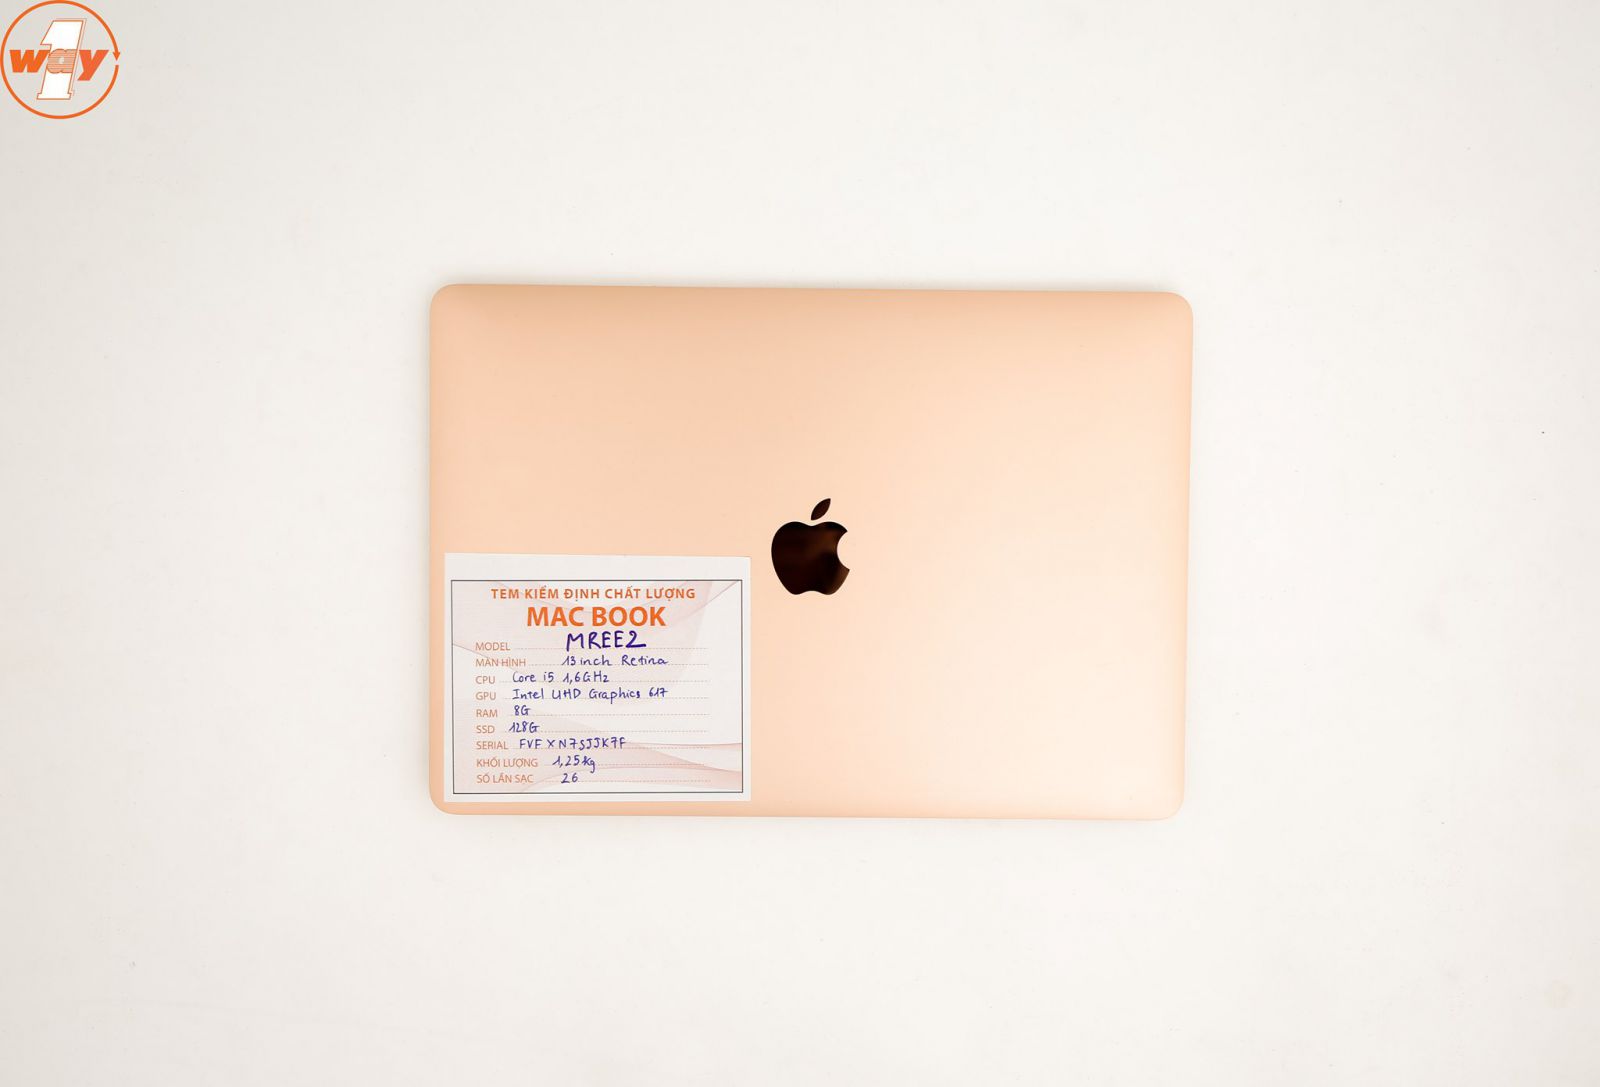 Logo quả táo kim loại được thiết kế phía sau máy giúp MacBook Air 2018 MREE2 trở nên thời thượng hơn